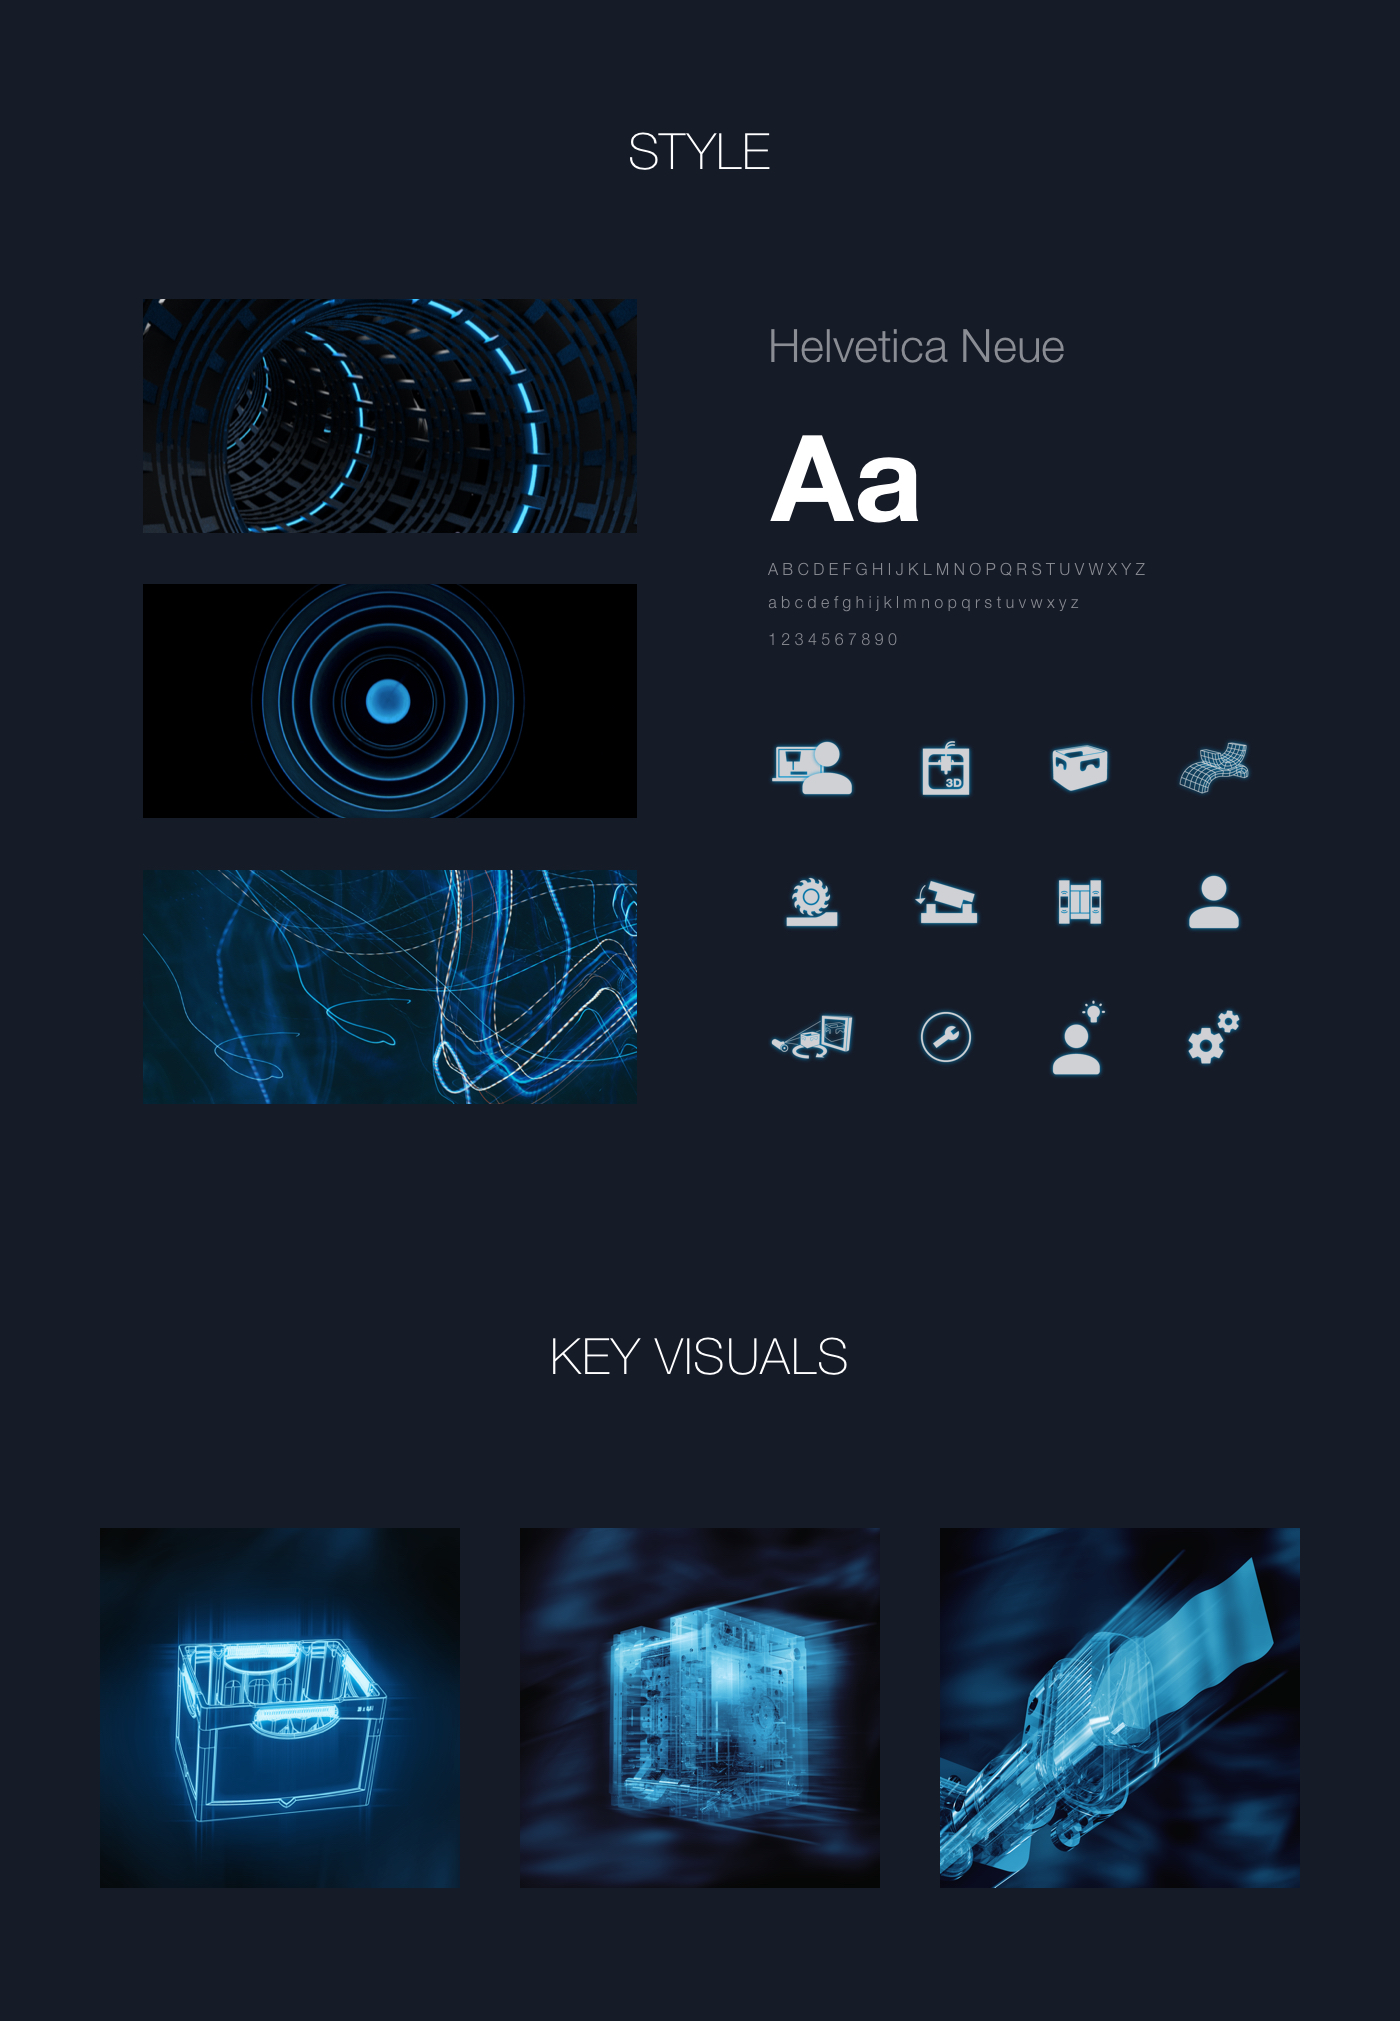 Haidlmair brand style and key visuals | Markenstil und Key Visuals